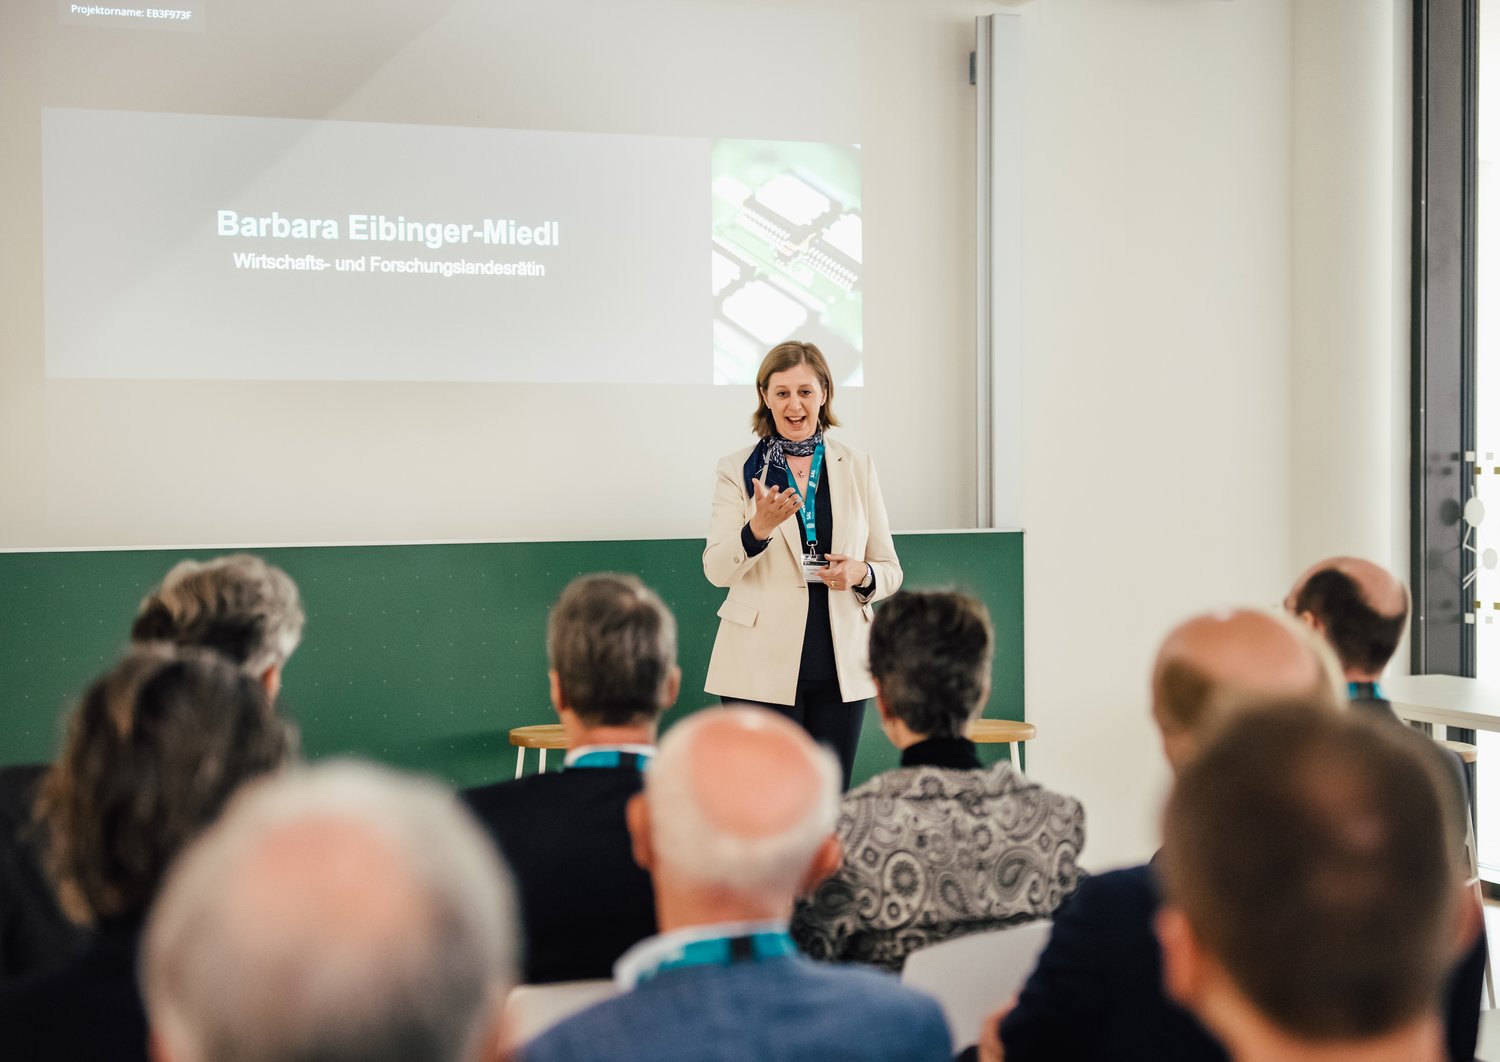 Barbara Eibinger-Miedl hält eine Präsentation vor einer Gruppe an Menschen